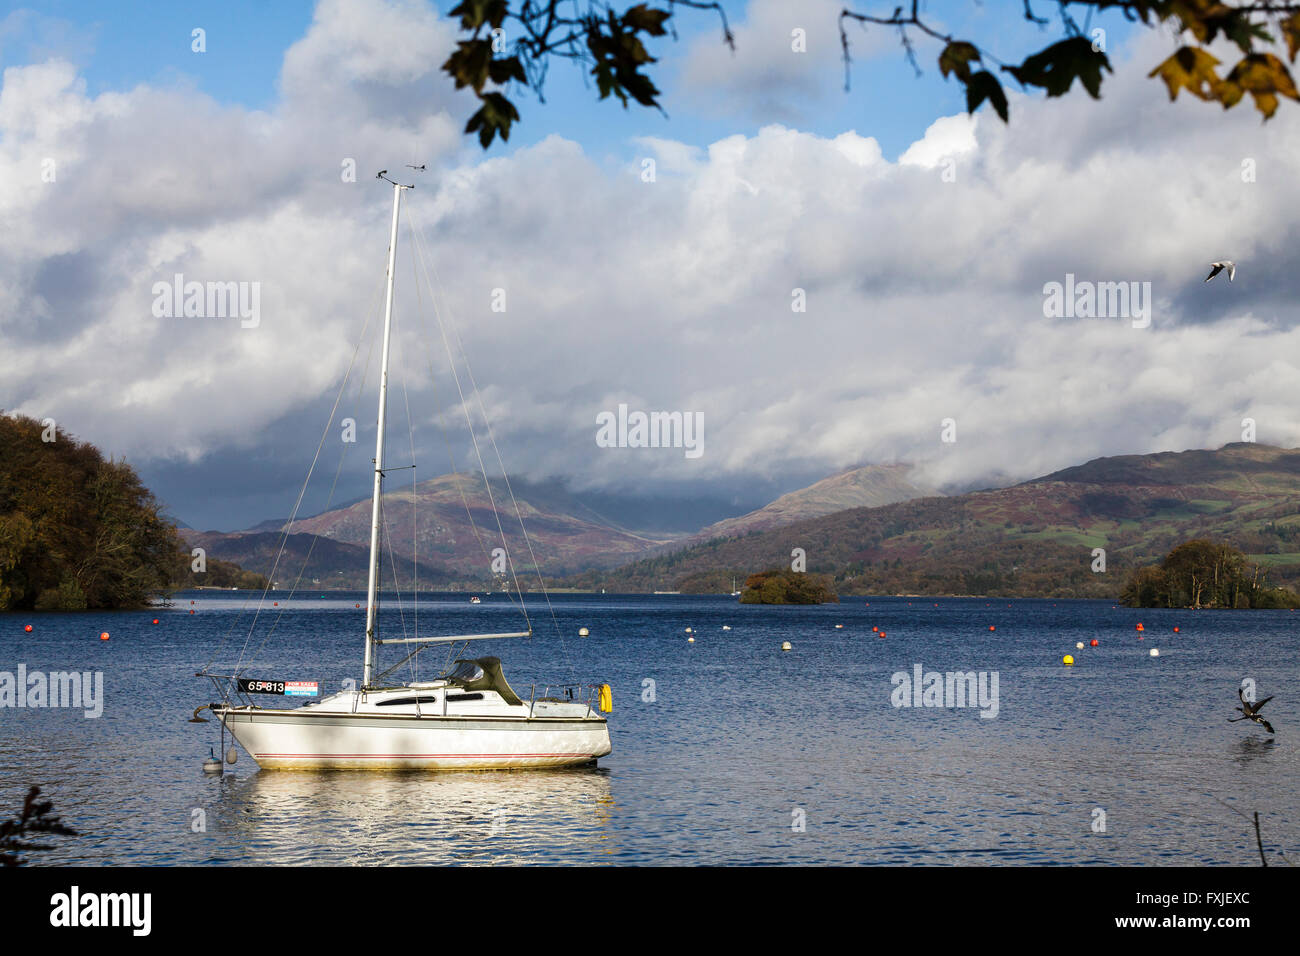 La location d'un bateau à voile sur le lac Windermere dans le Lake District, Cumbria, Angleterre, Royaume-Uni Banque D'Images